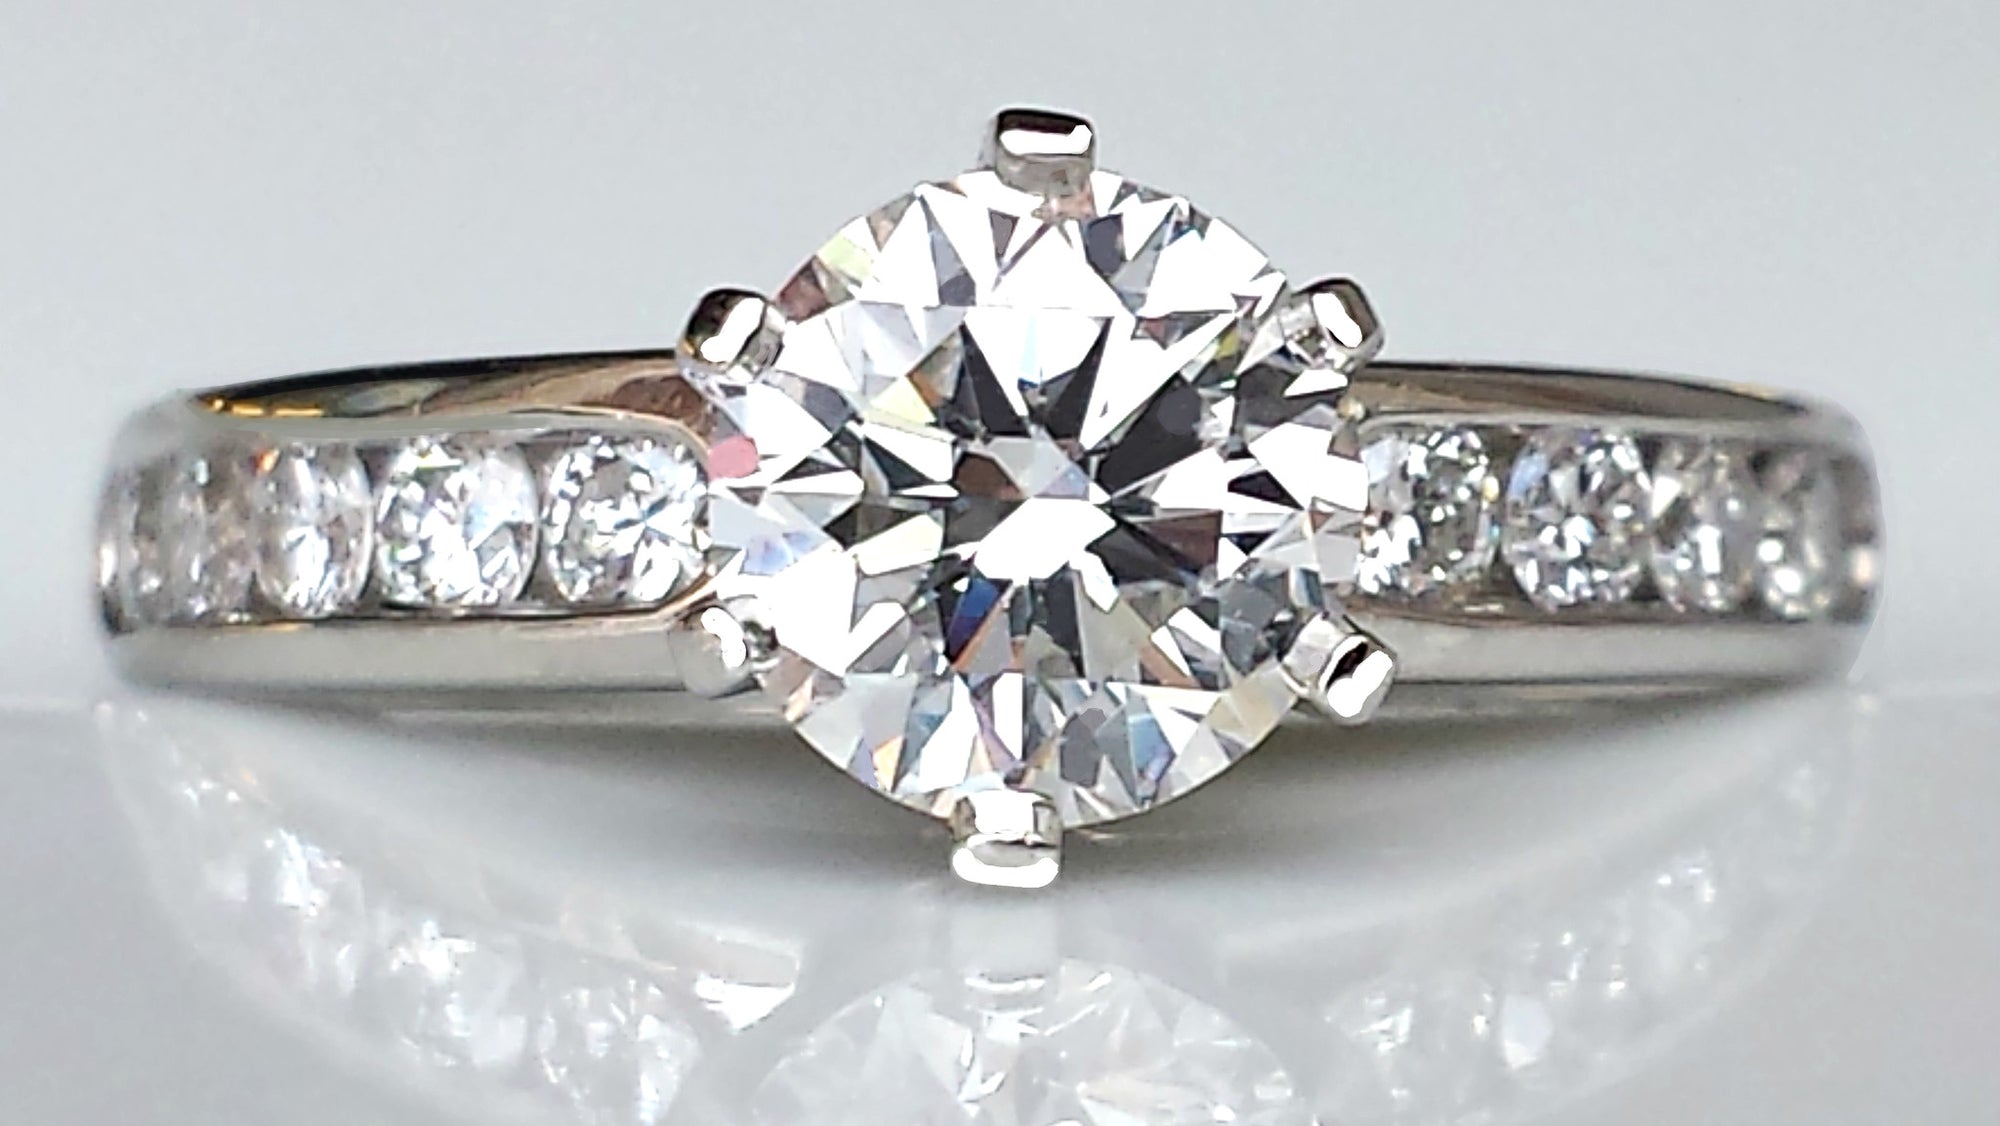 Emerald-cut Diamond Engagement Ring in Platinum